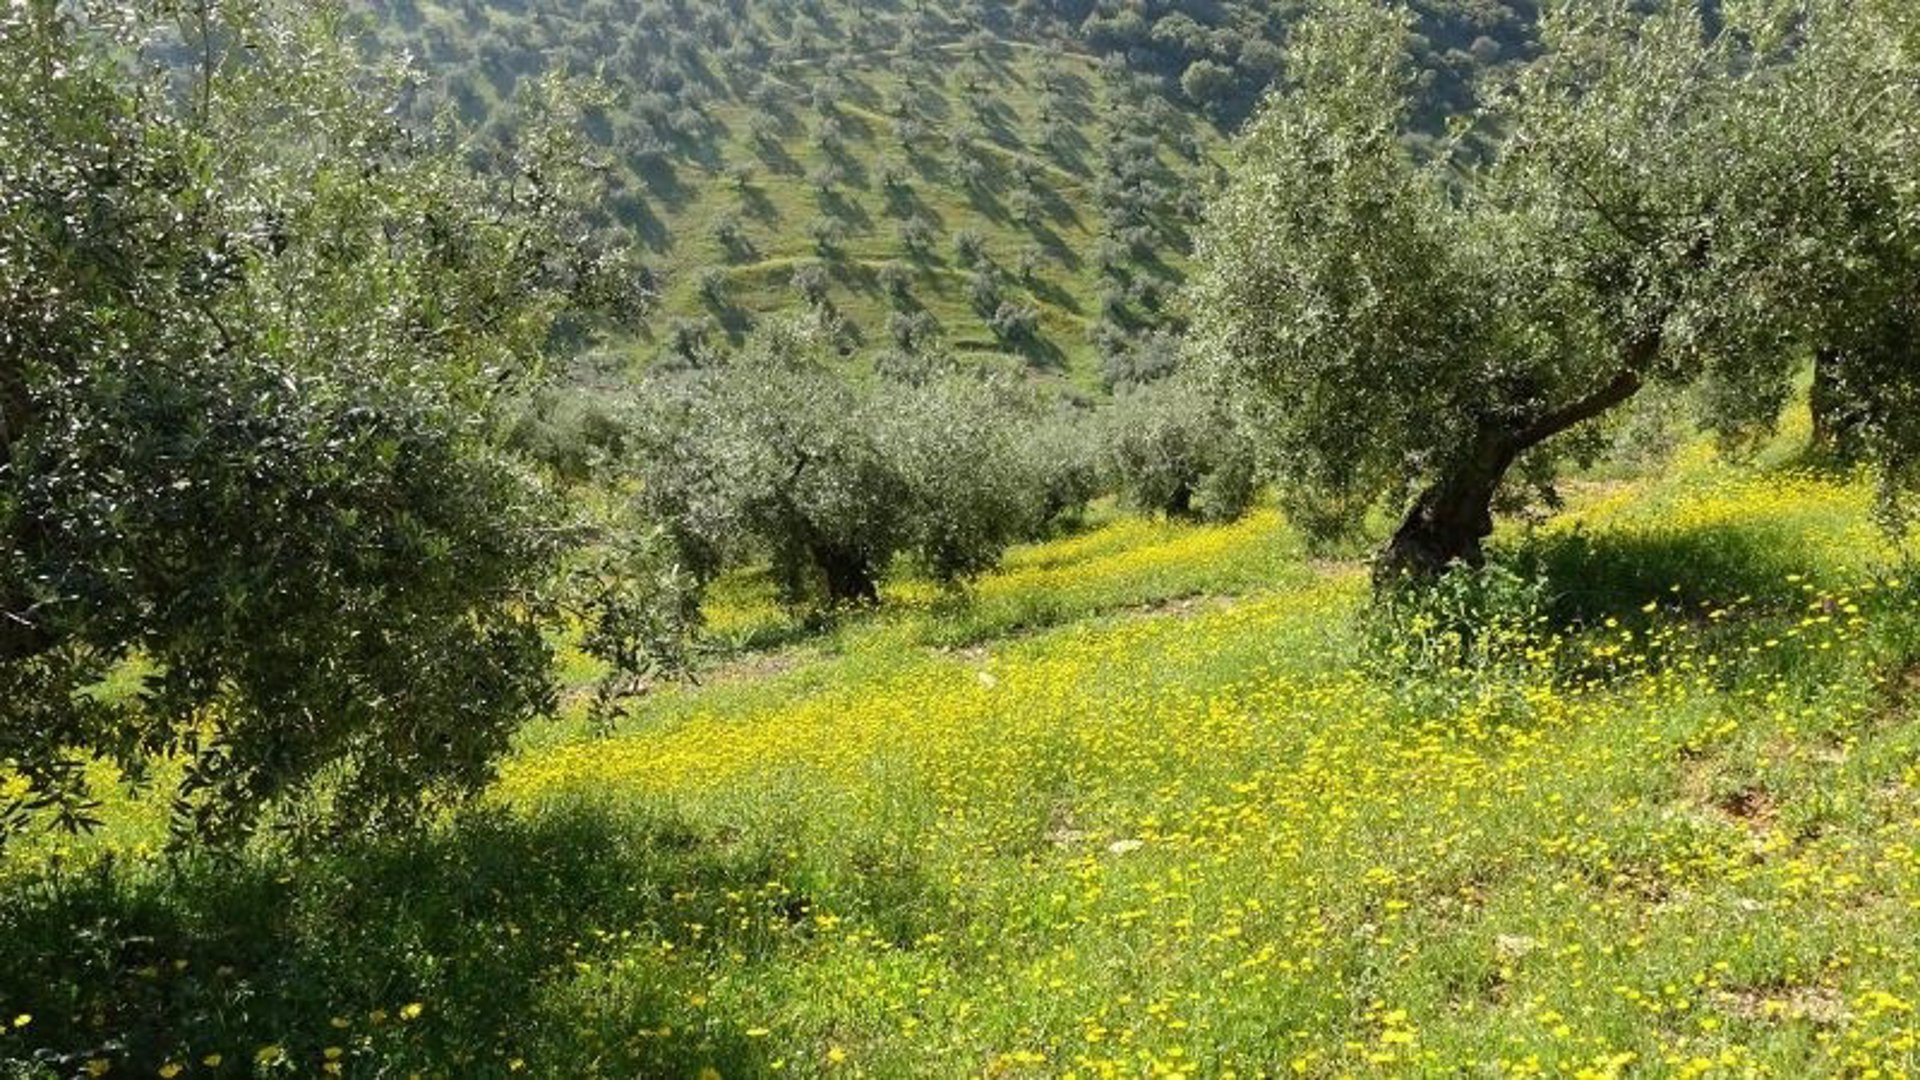 Demuestran los suelos con cubierta vegetal favorecen la diversidad de mariposas en el olivar en pendiente